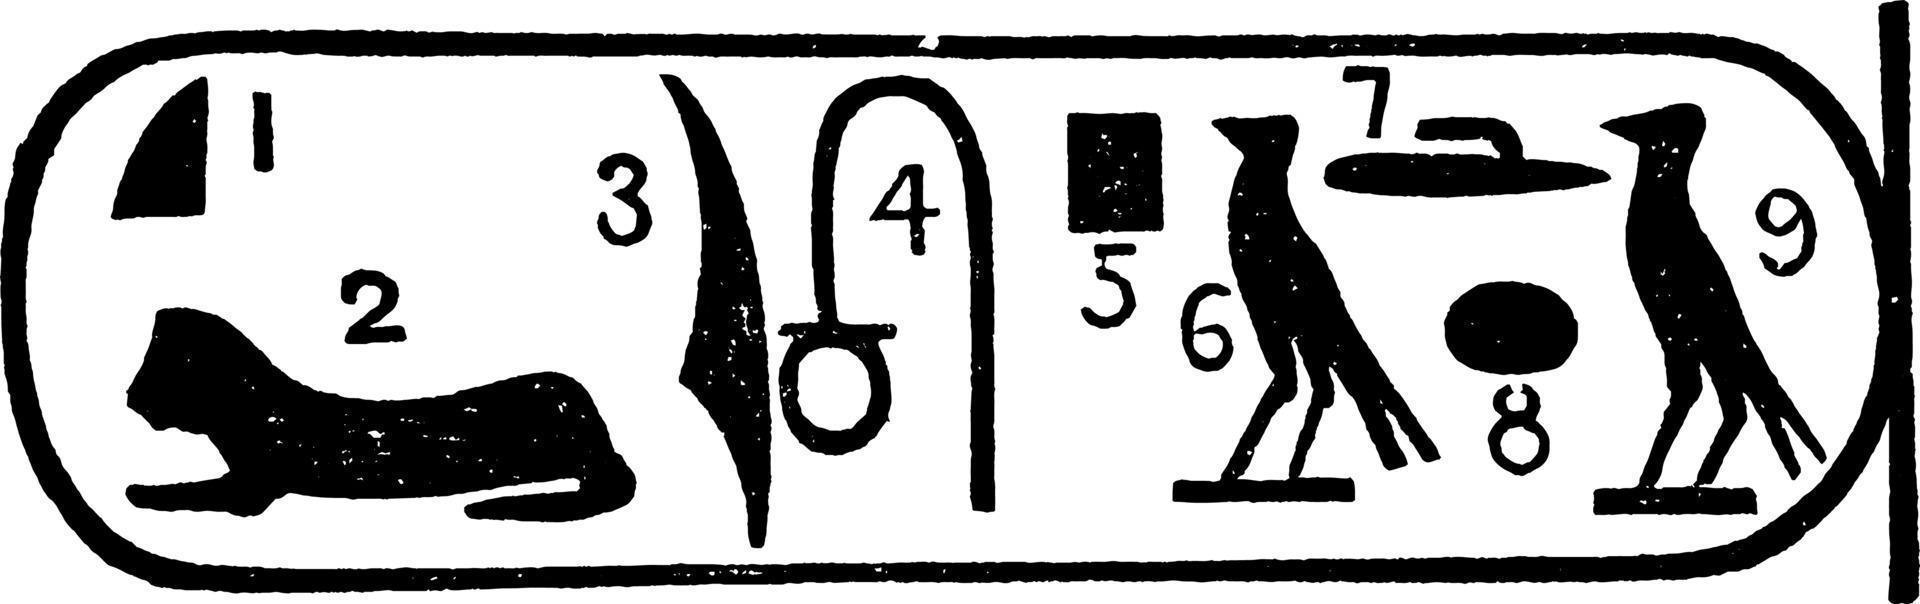 pedra de roseta ou leitura de hieróglifos, gravura vintage vetor